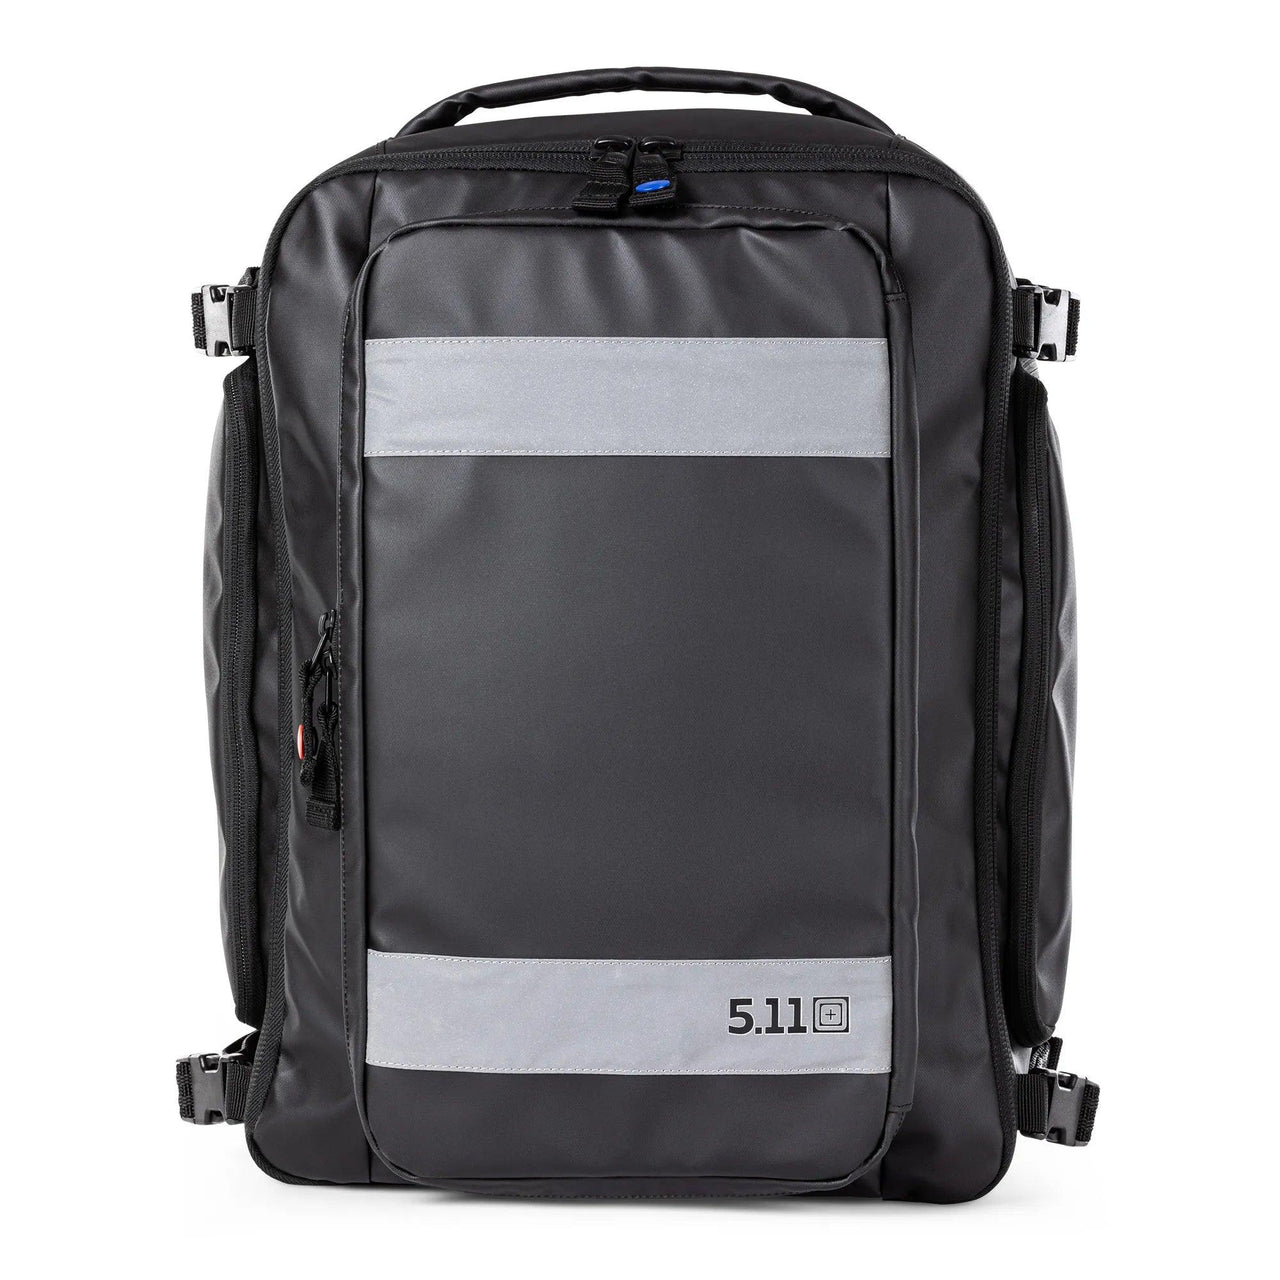 Responder 48 EMS Backpack - Vendor